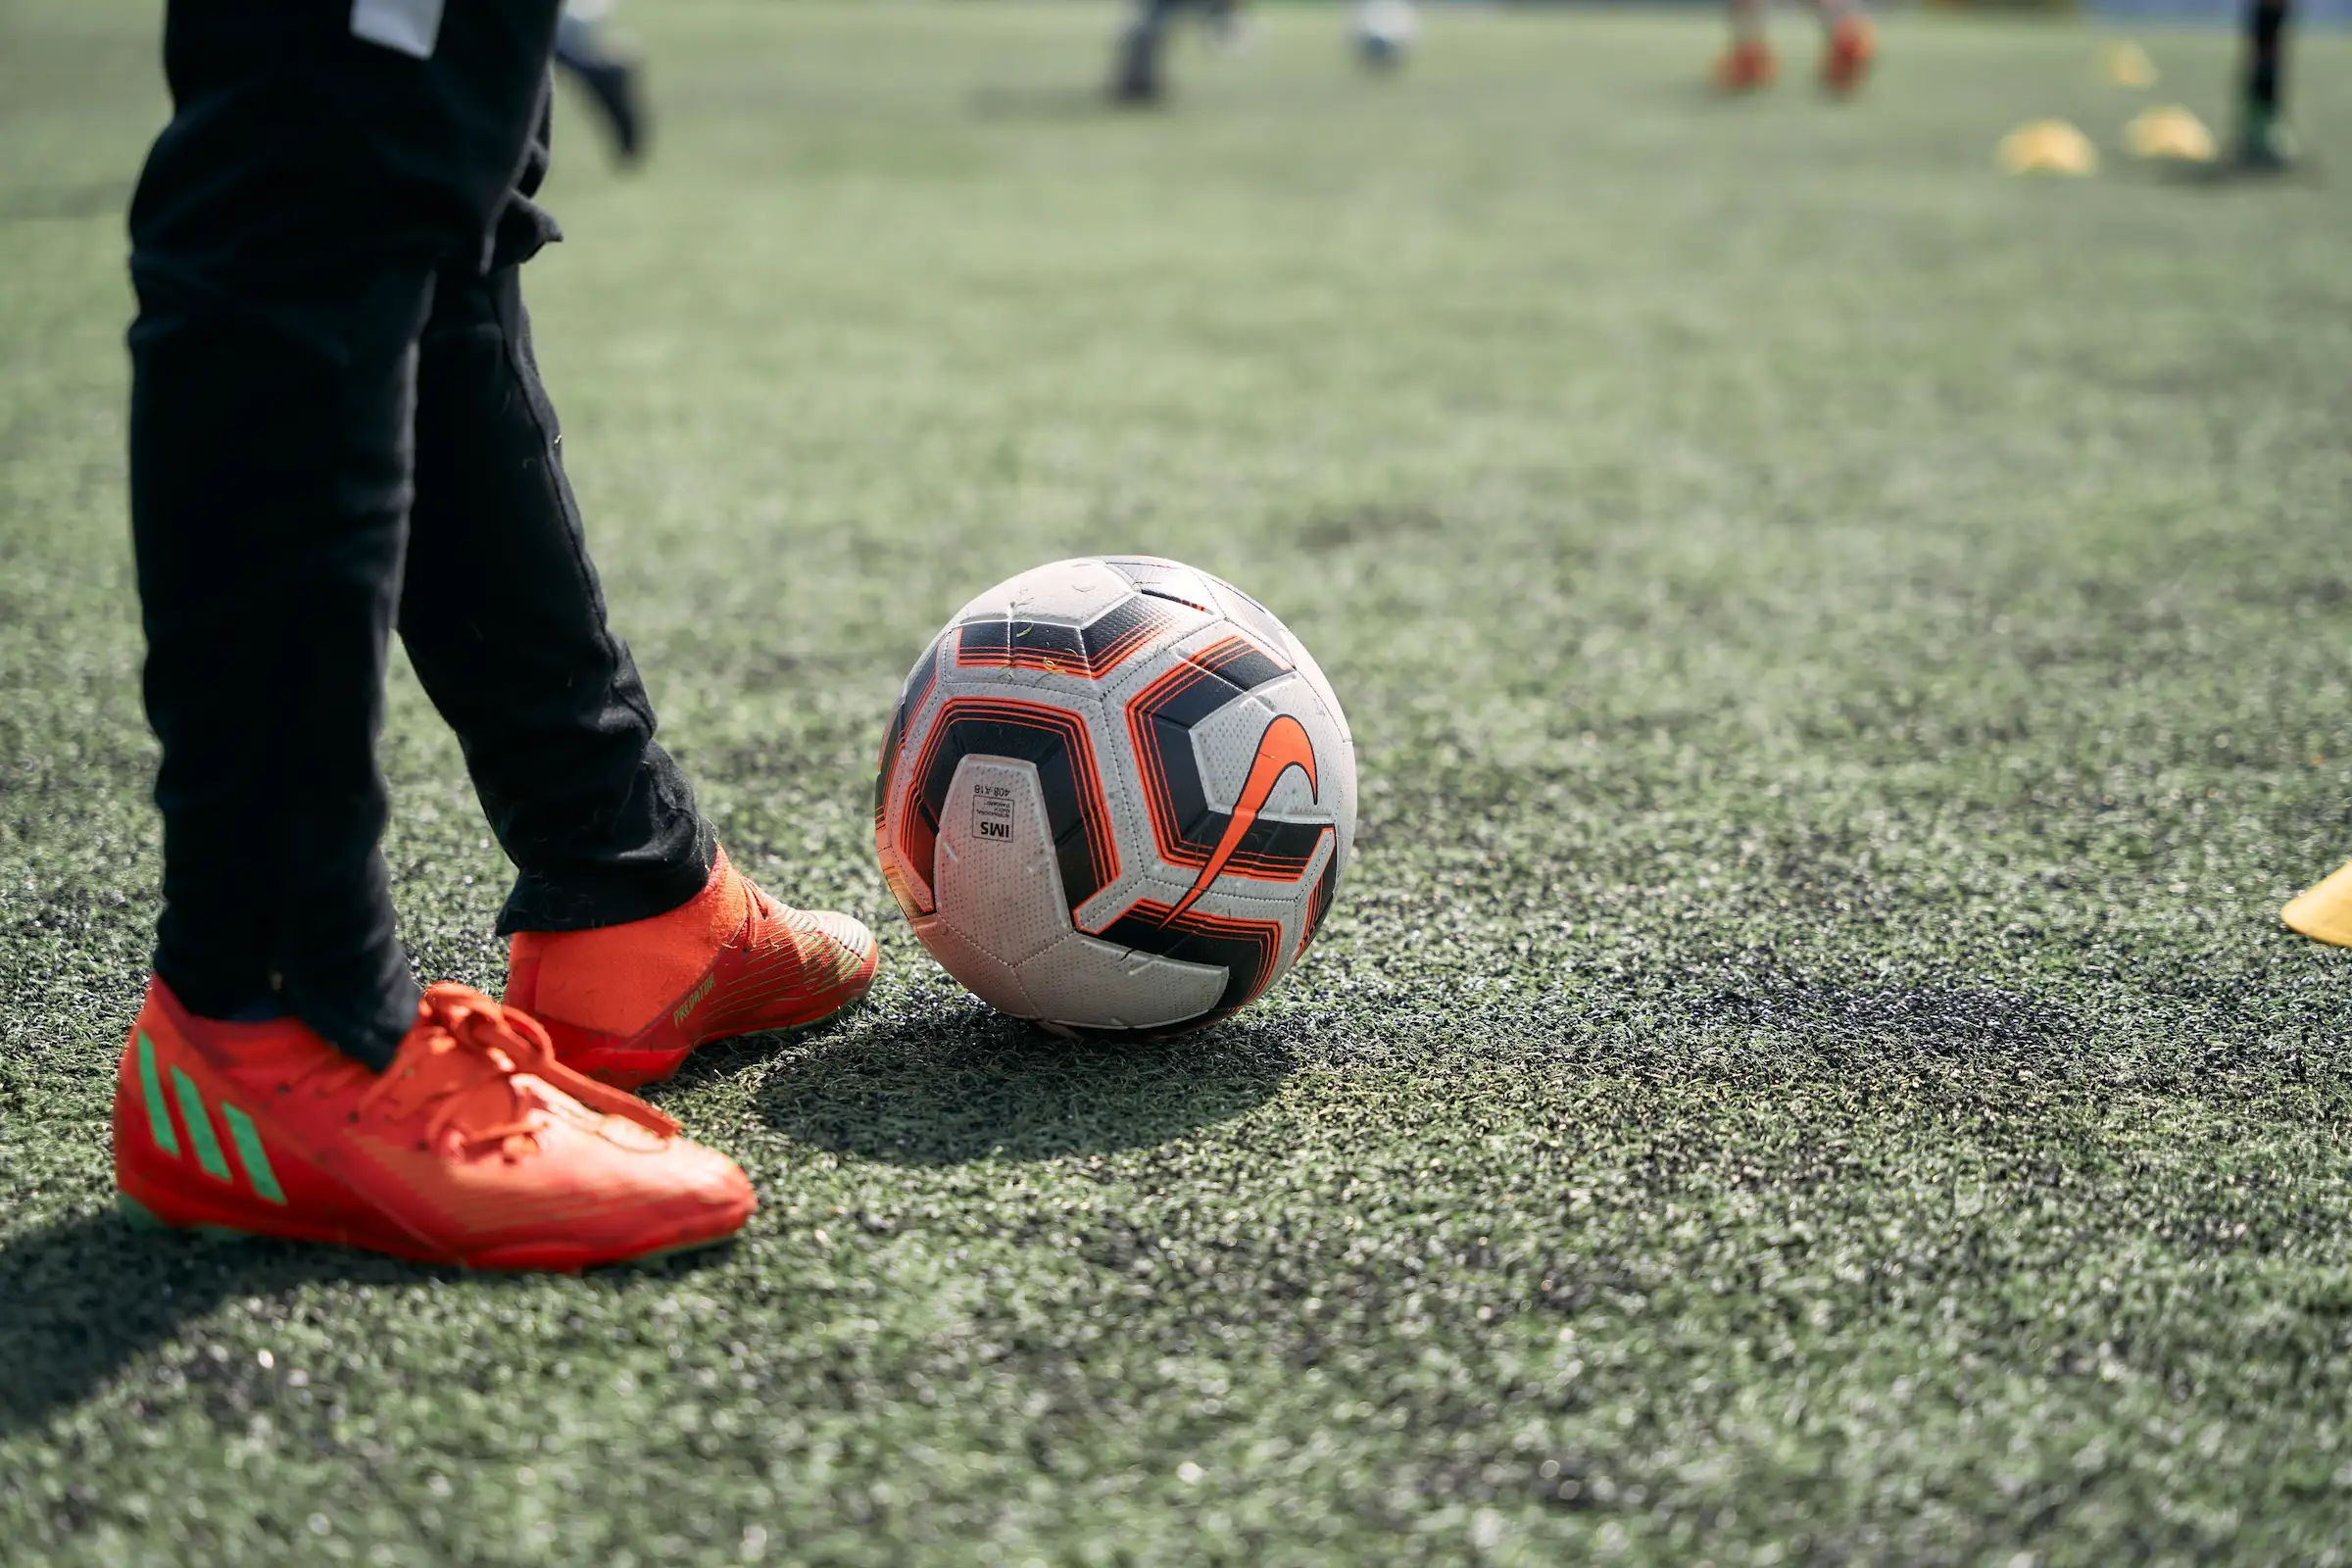 Bilde av en fotball og bein som står ved siden av på en kunstgressbane